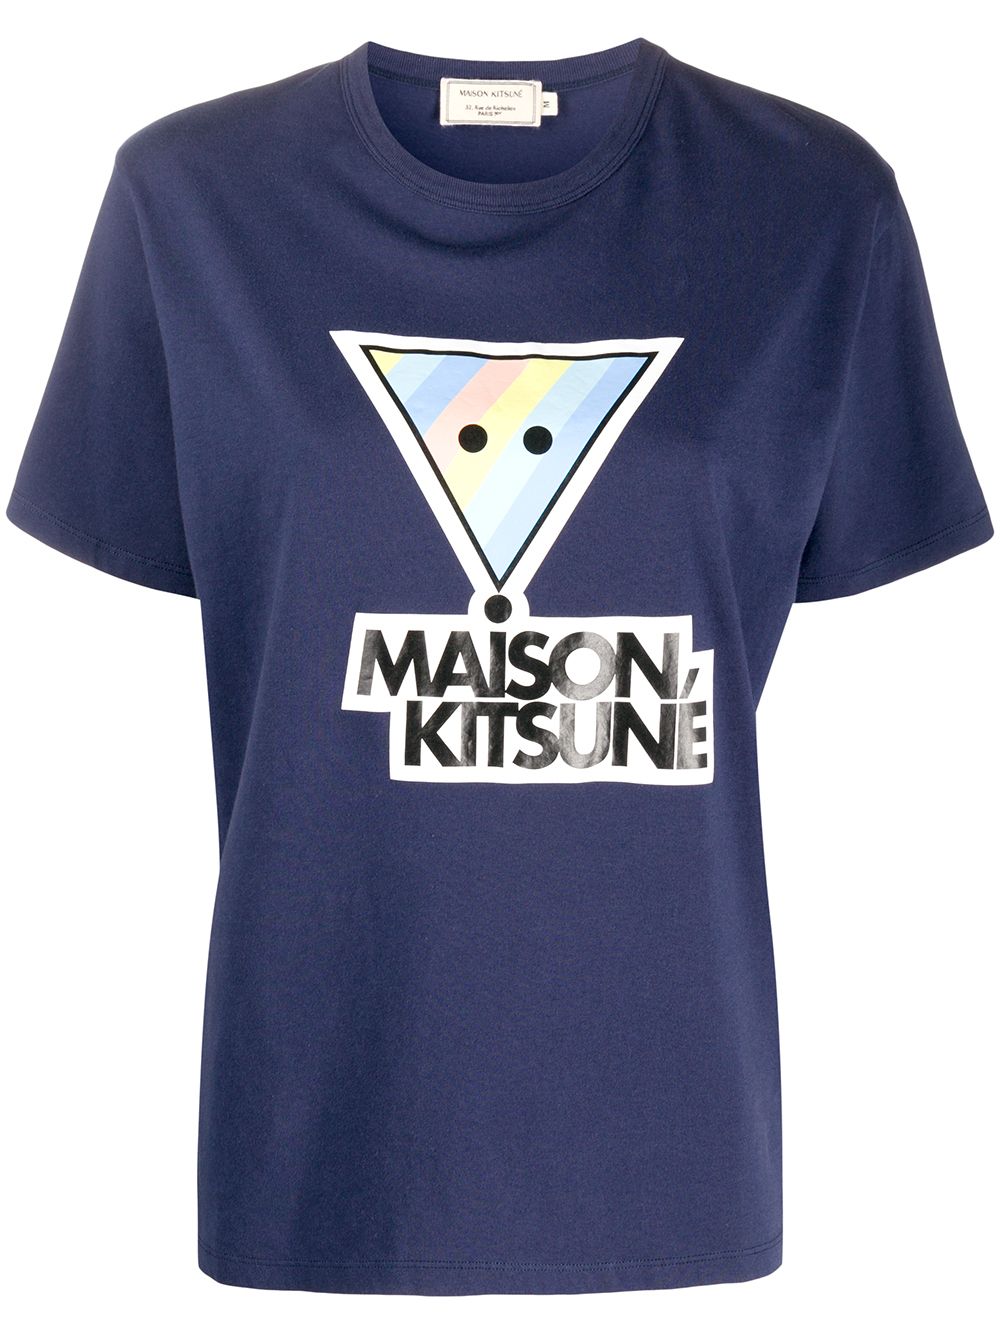 фото Maison kitsuné футболка с принтом